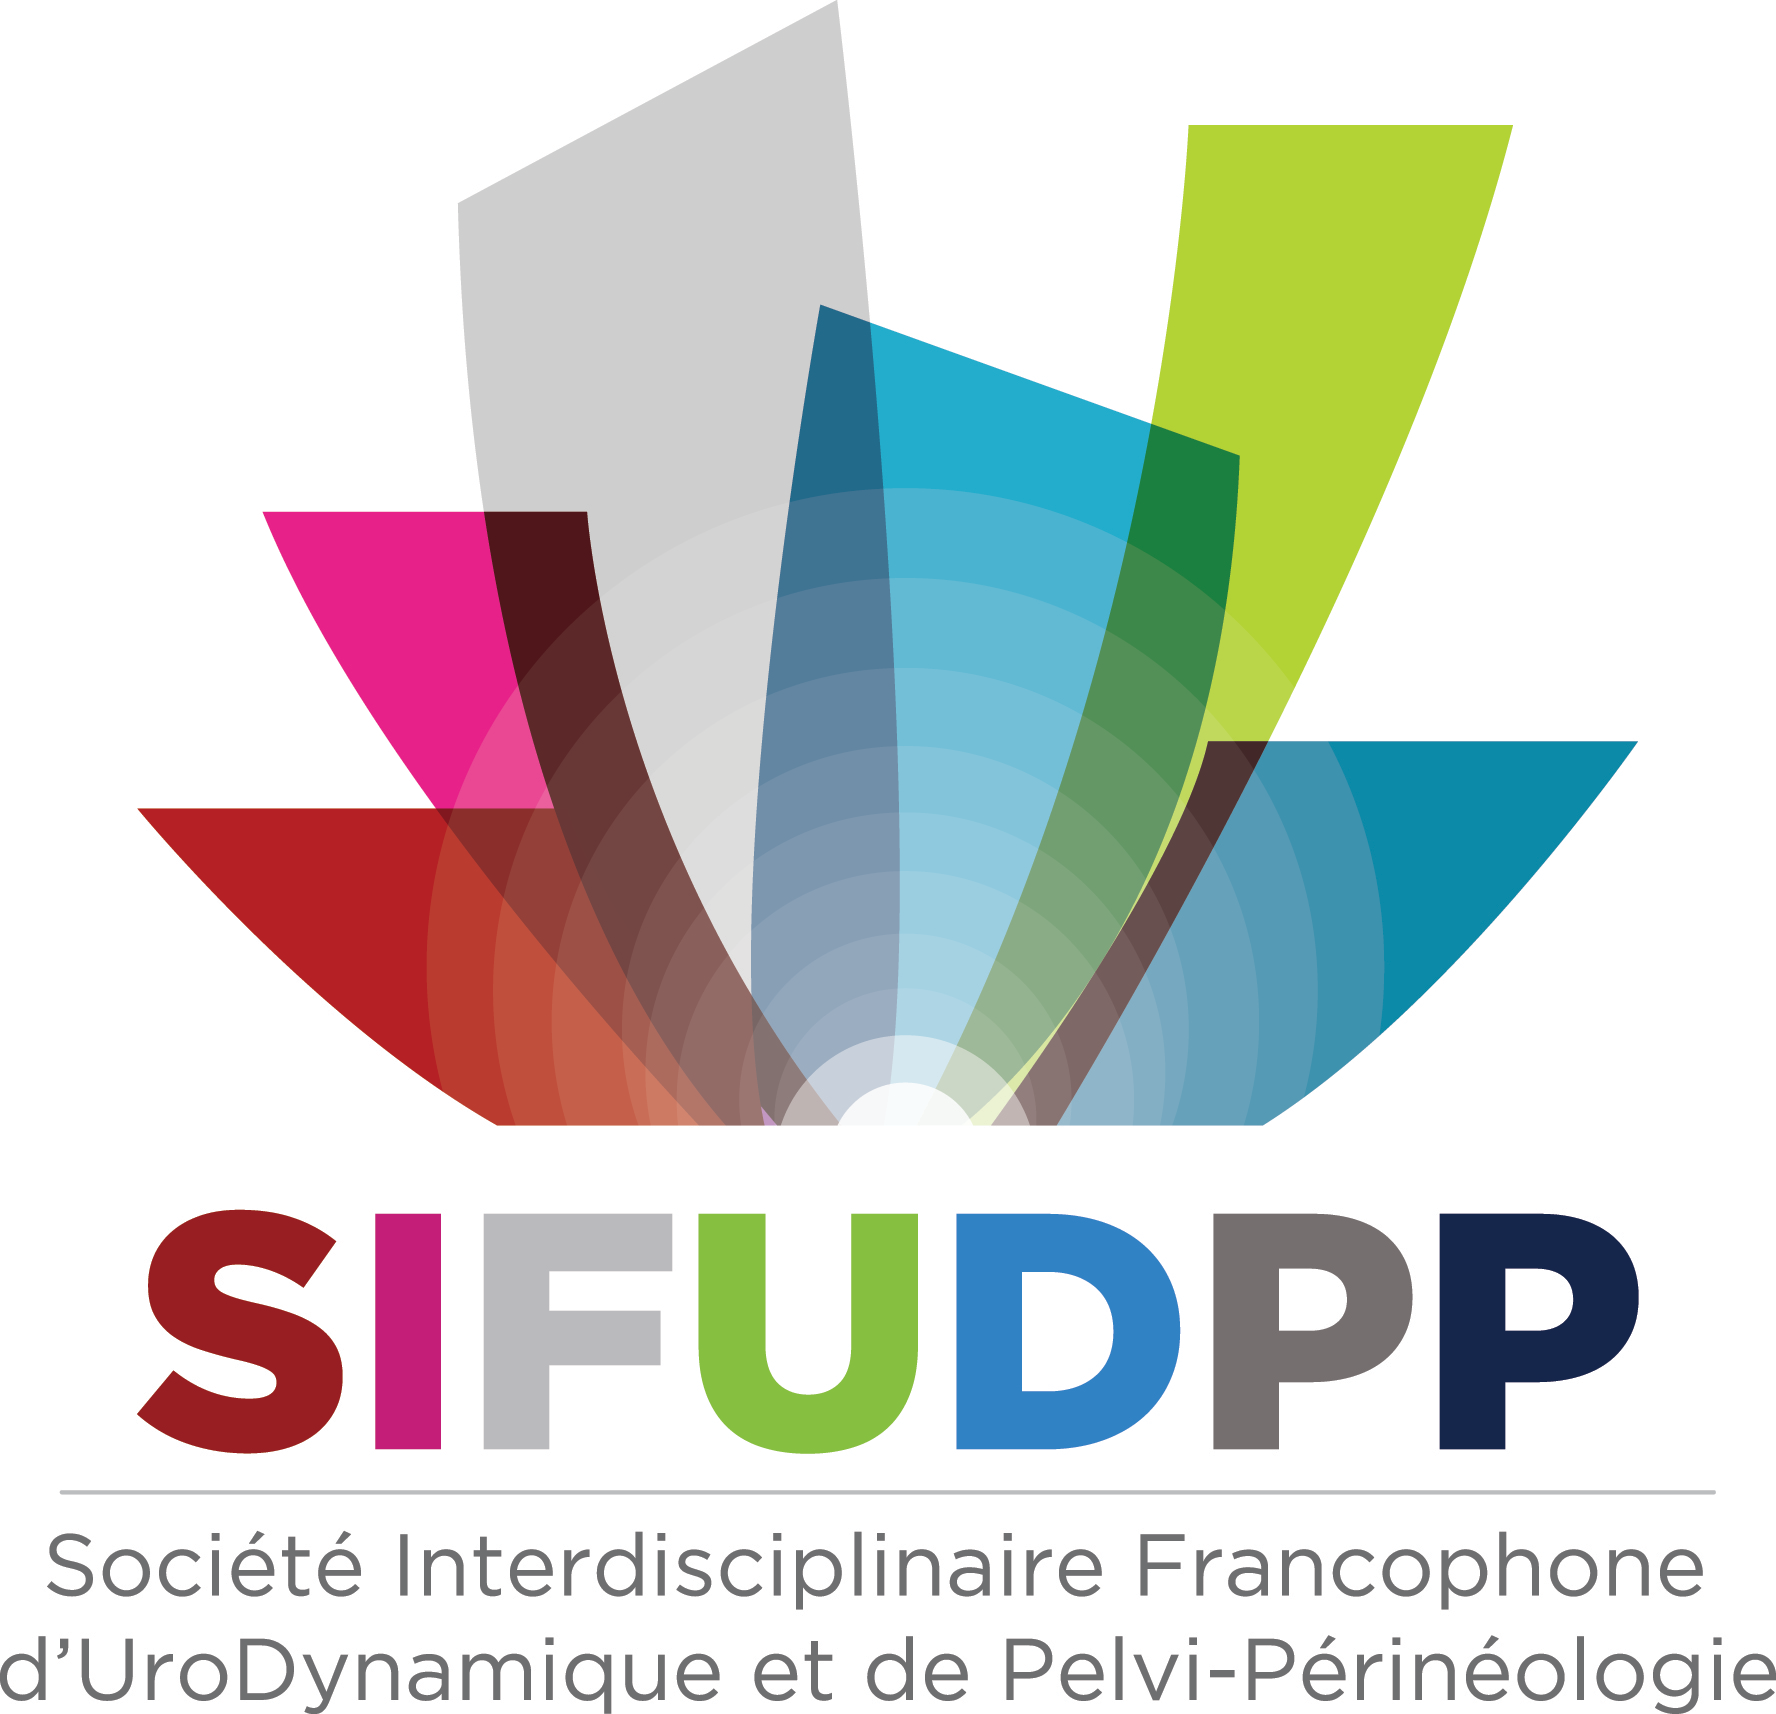 SIFUD-PP La Baule 2015 : ATELIER 10 - Incontinence urinaire post-prostatectomie : comment traiter ?